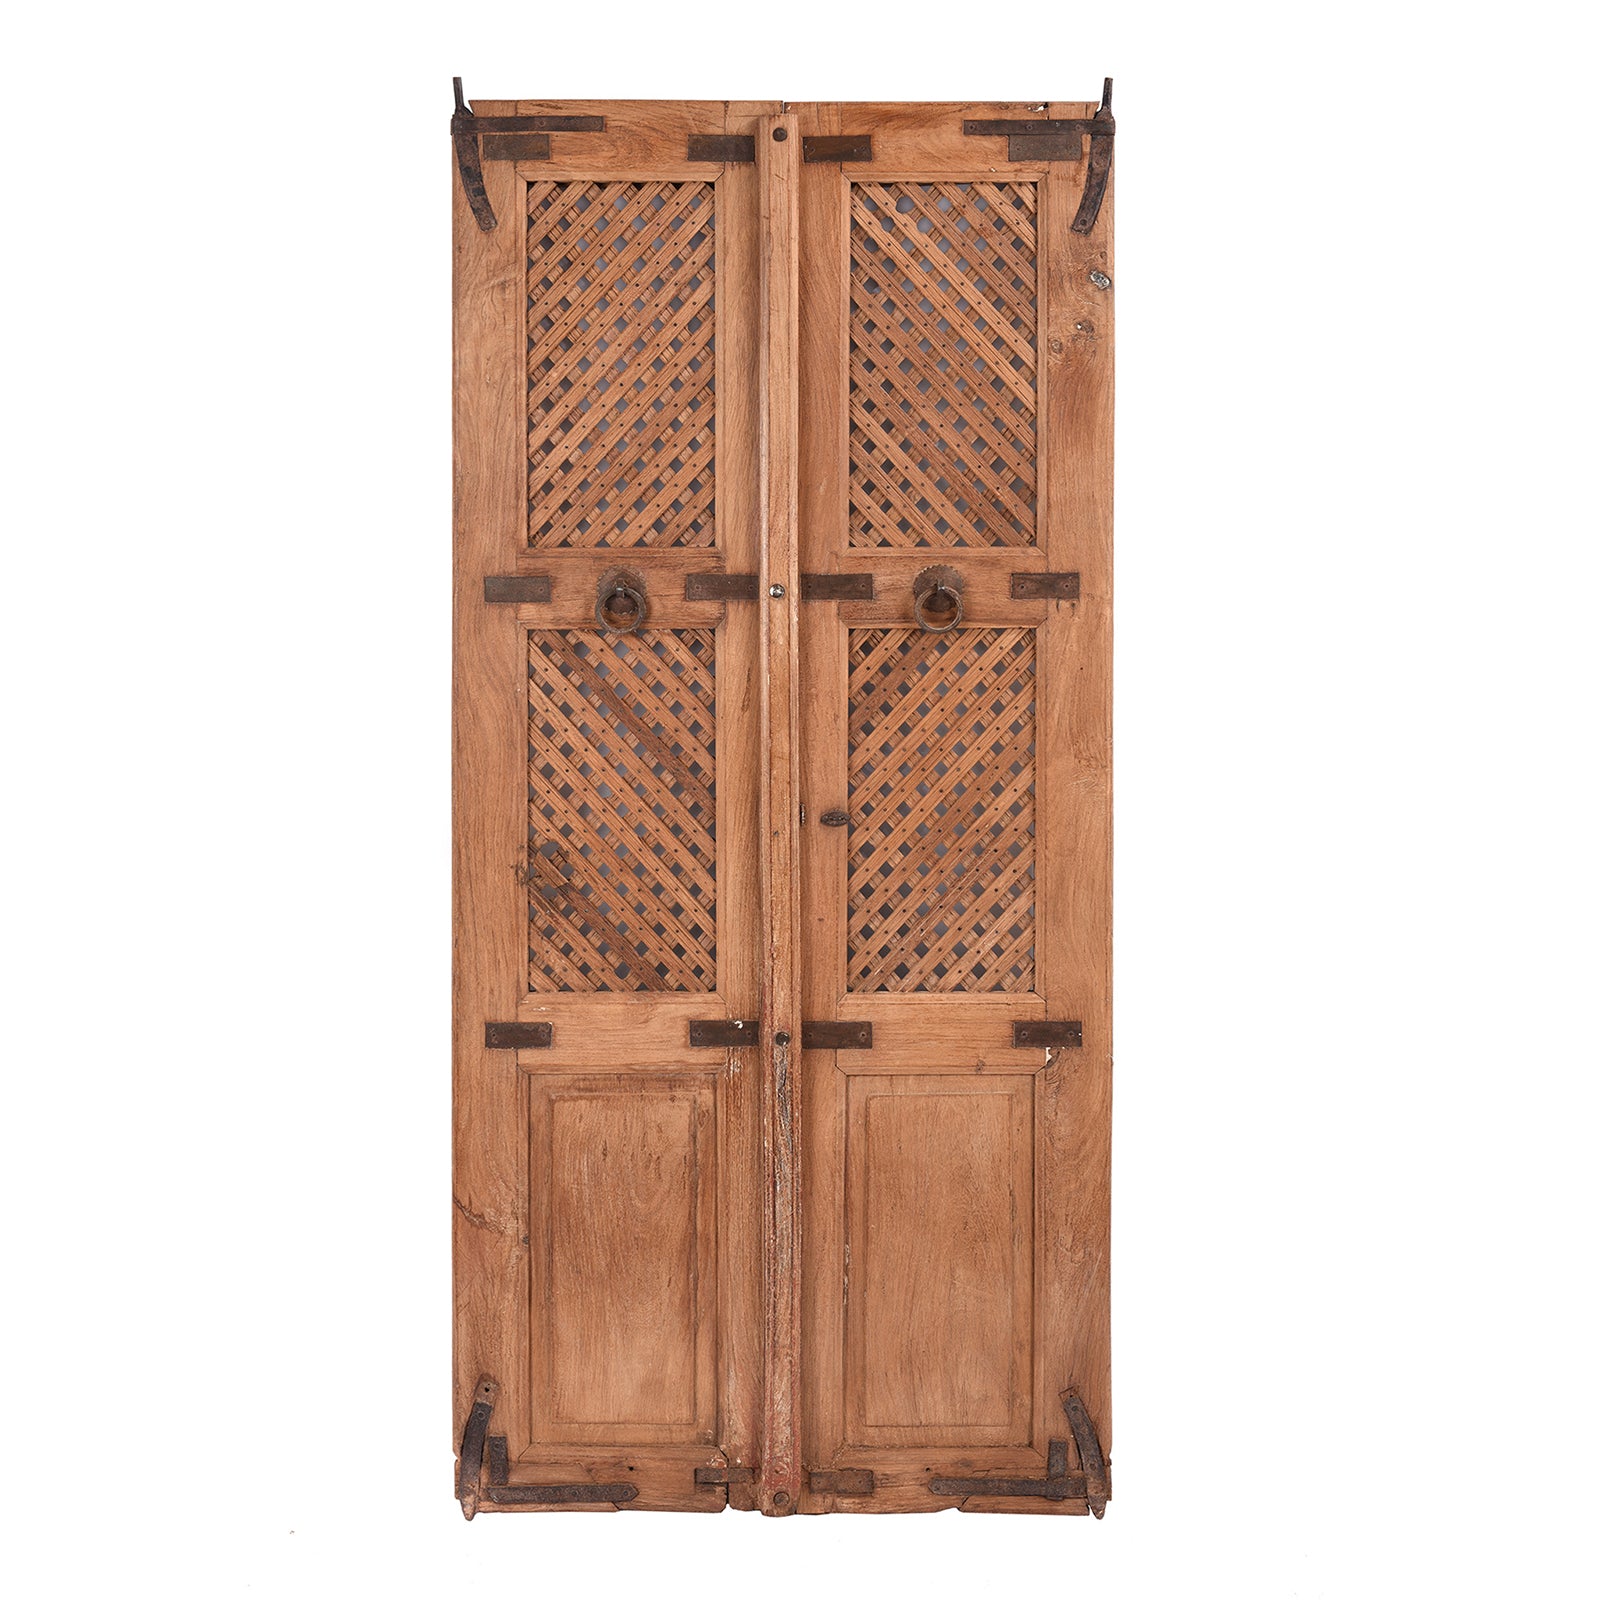 Antique Lattice Teak Jali Doors From Bikaner - 19th Century | INDIGO ANTIQUES